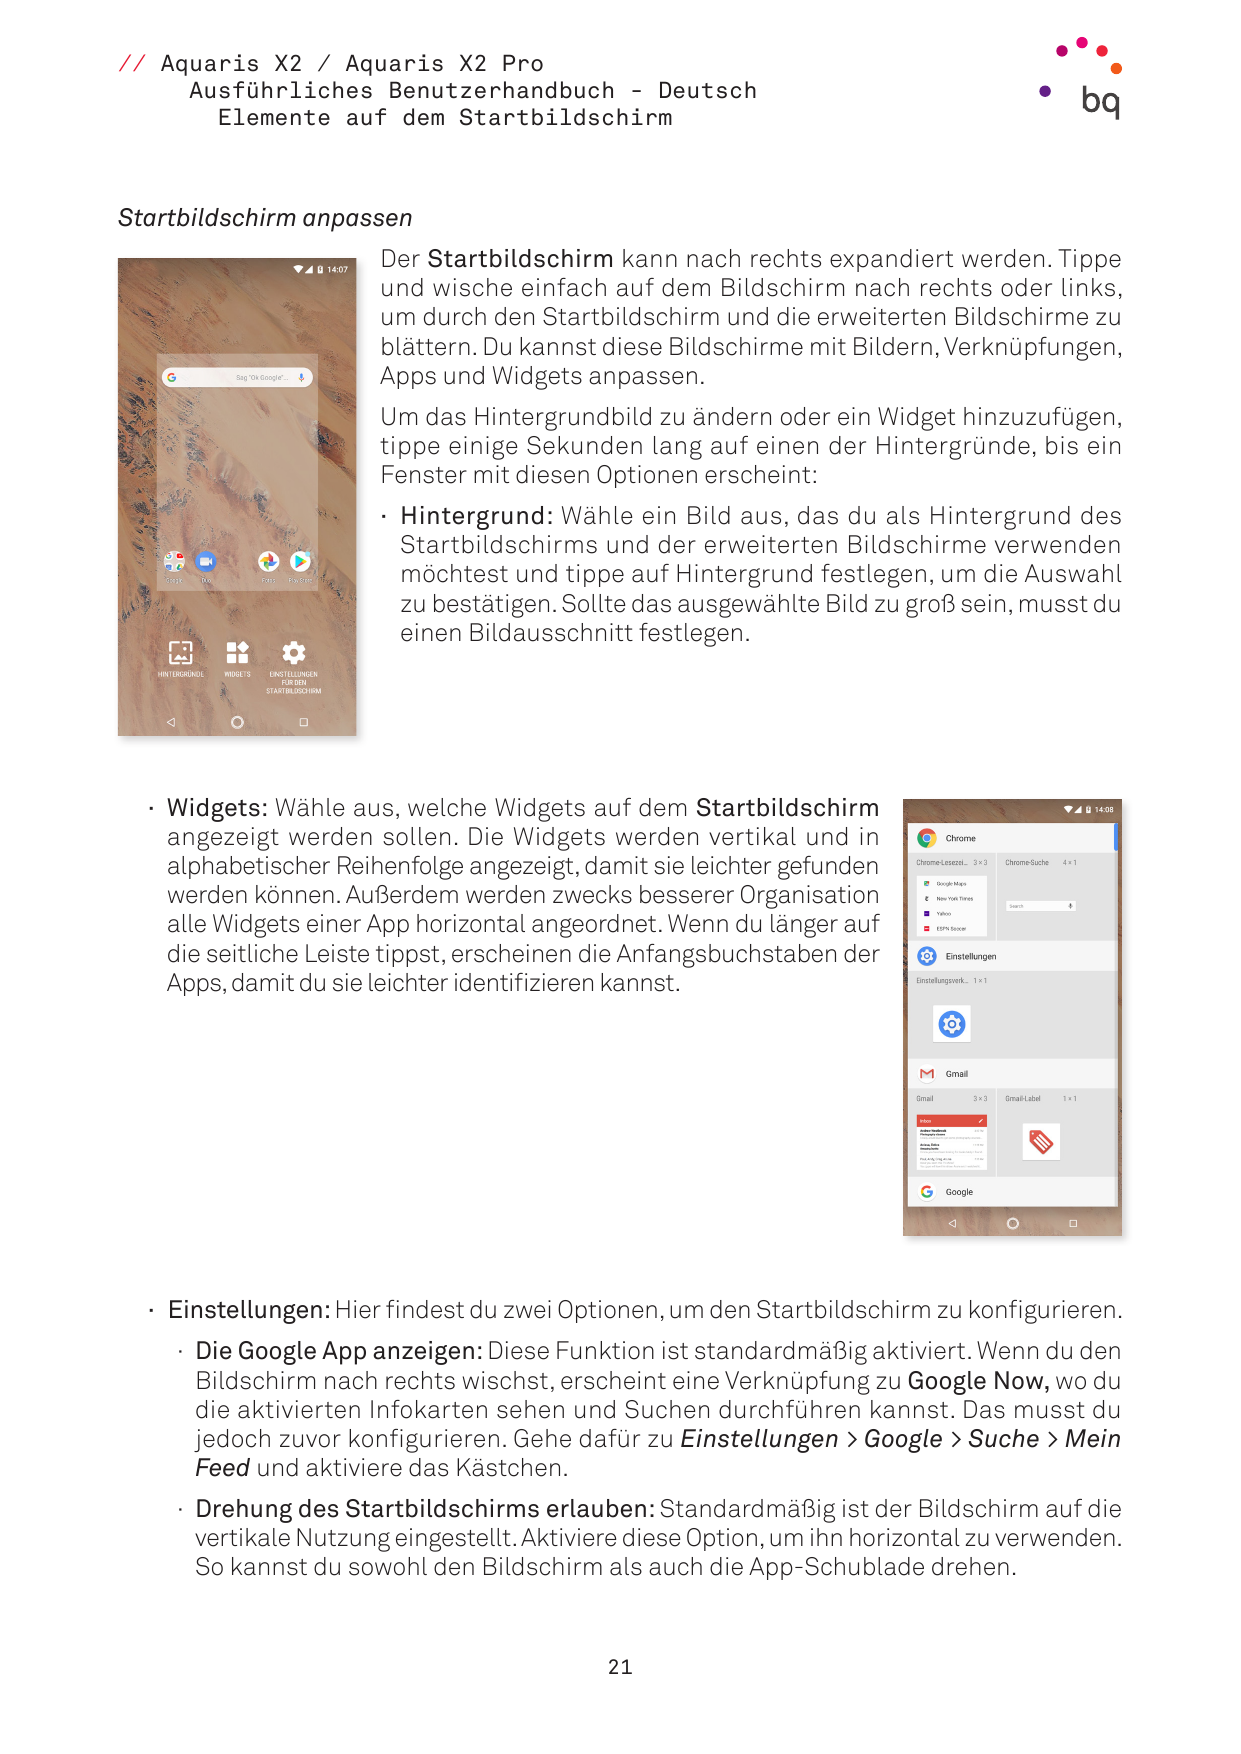 // Aquaris X2 / Aquaris X2 ProAusführliches Benutzerhandbuch - DeutschElemente auf dem StartbildschirmStartbildschirm anpassenDe